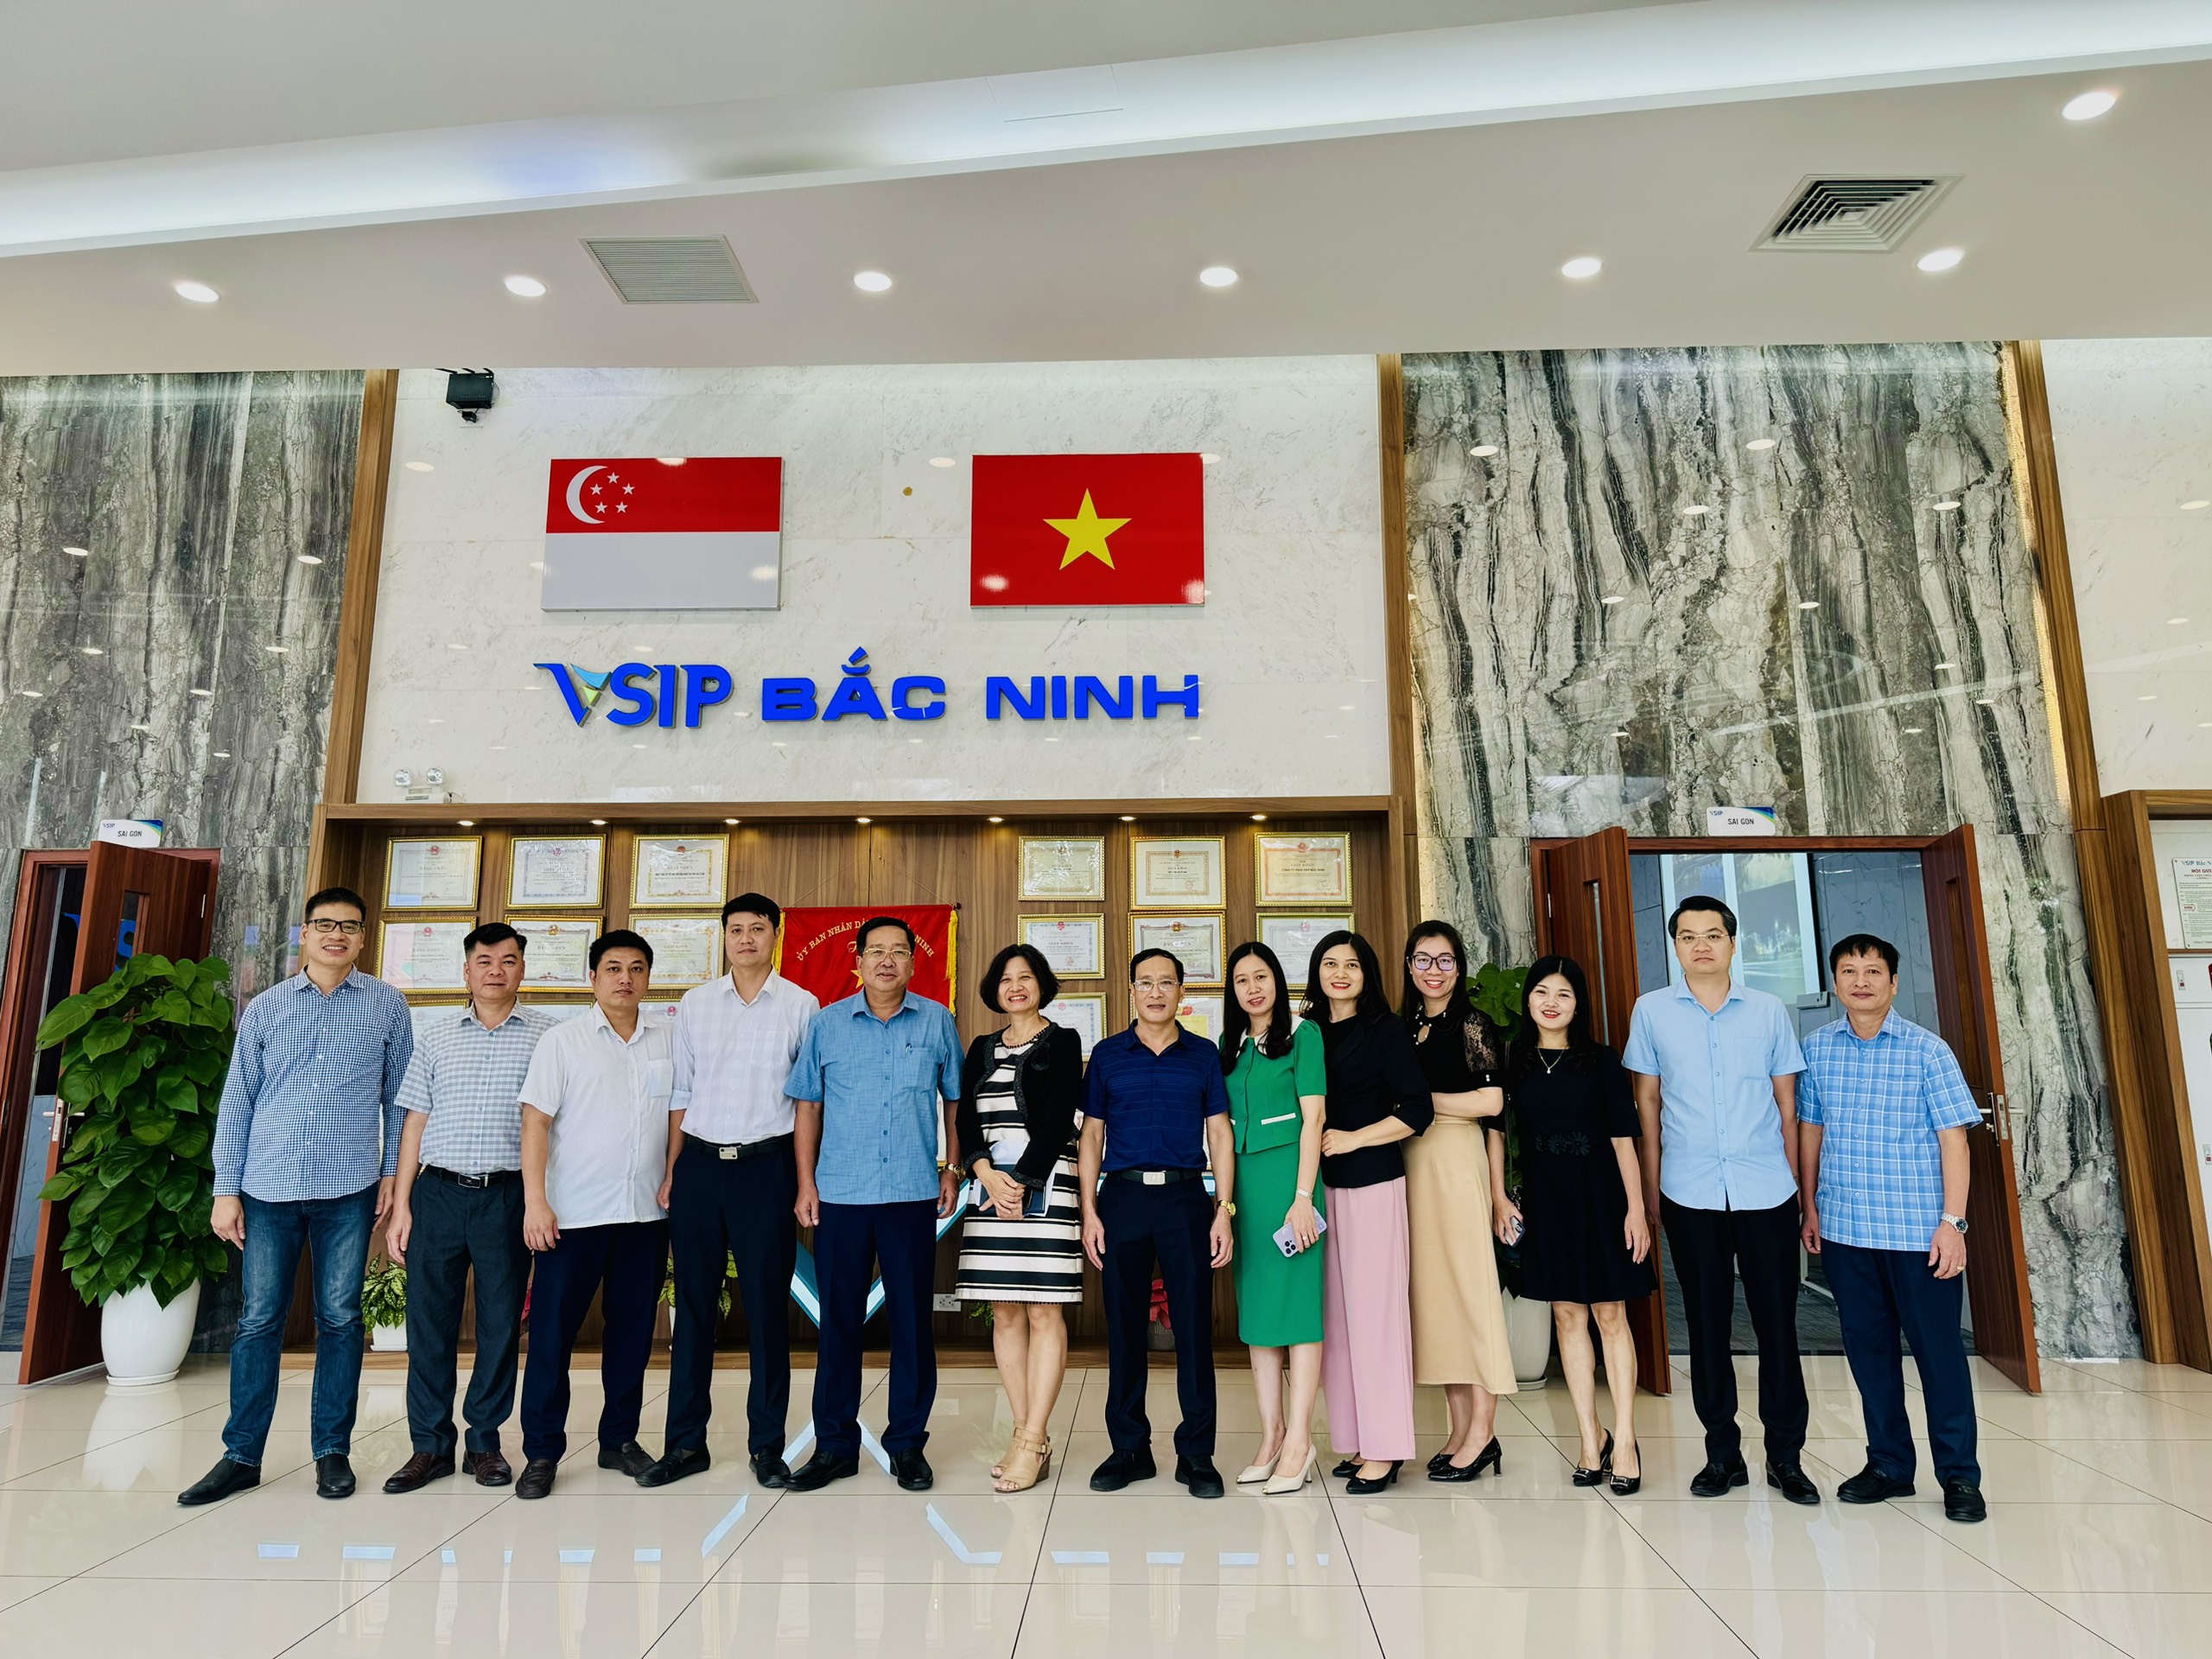 Trao đổi kinh nghiệm, thăm quan khu công nghiệp - đô thị - dịch vụ Việt Nam - Singapore (VSIP) tại tỉnh Bắc Ninh